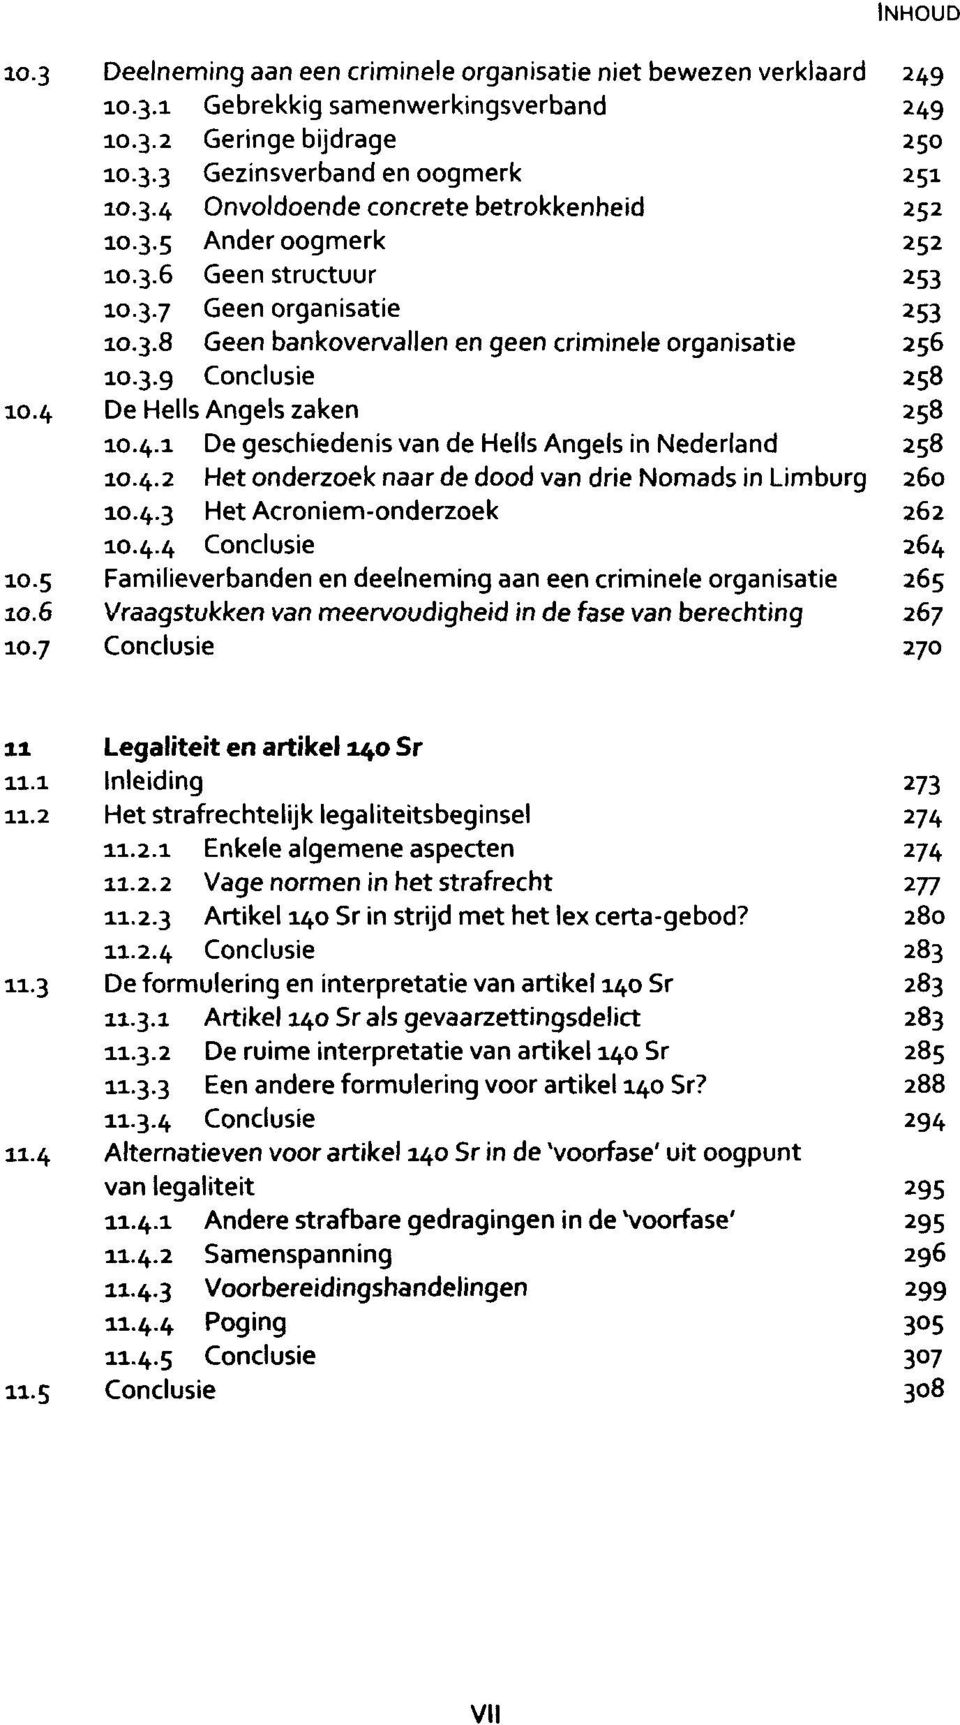 De Hells Angels zaken 258 10.4.1 De geschiedenis van de Hells Angels in Nederland 258 10.4.2 Het onderzoek naar de dood van drie Nomads in Limburg 260 10.4.3 Het Acroniem-onderzoek 262 10.4.4 Conclusie 264 10.